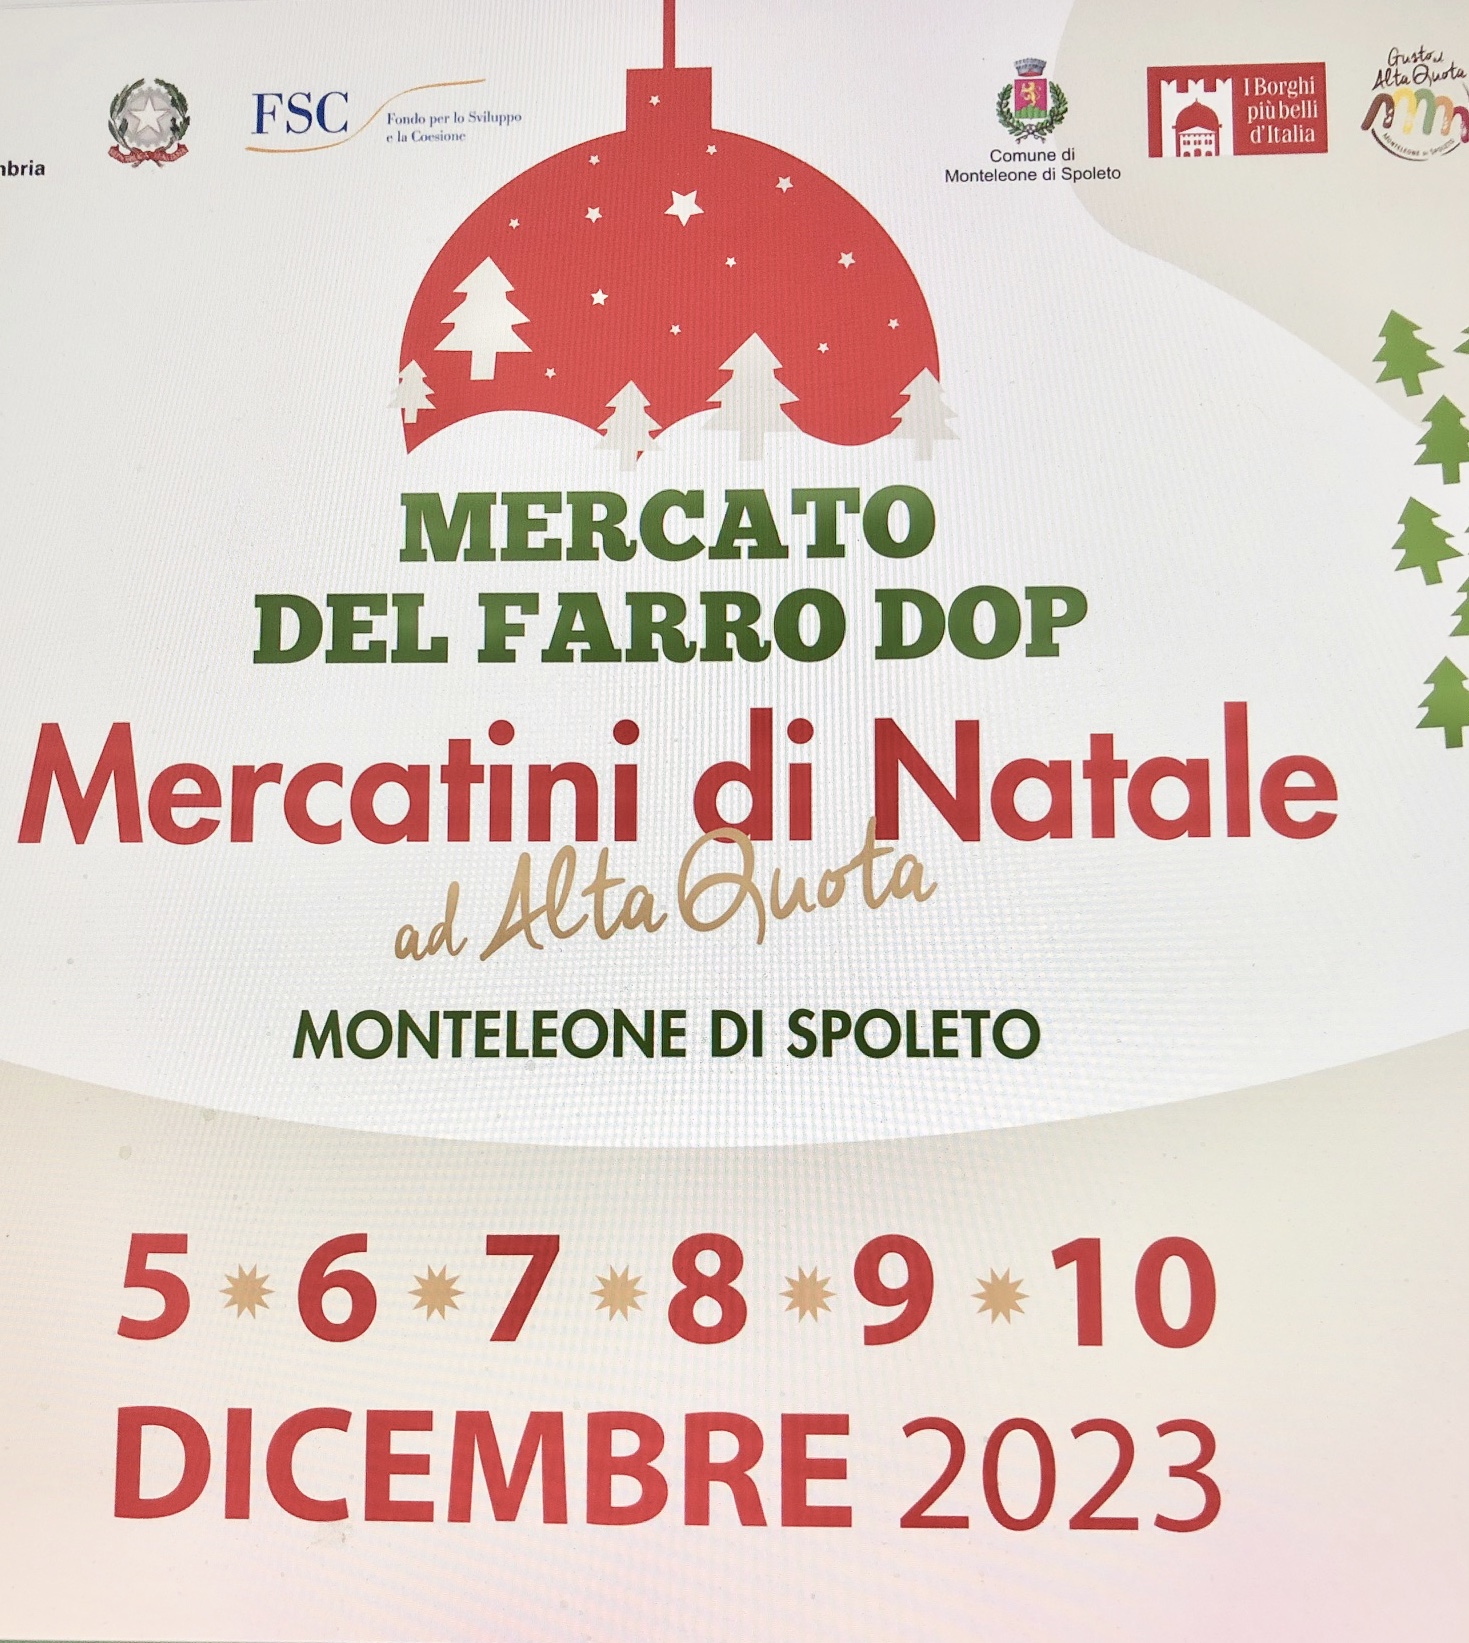 Mostra Mercato Farro dop e Mercatini di Natale ad alta Quota 2023 